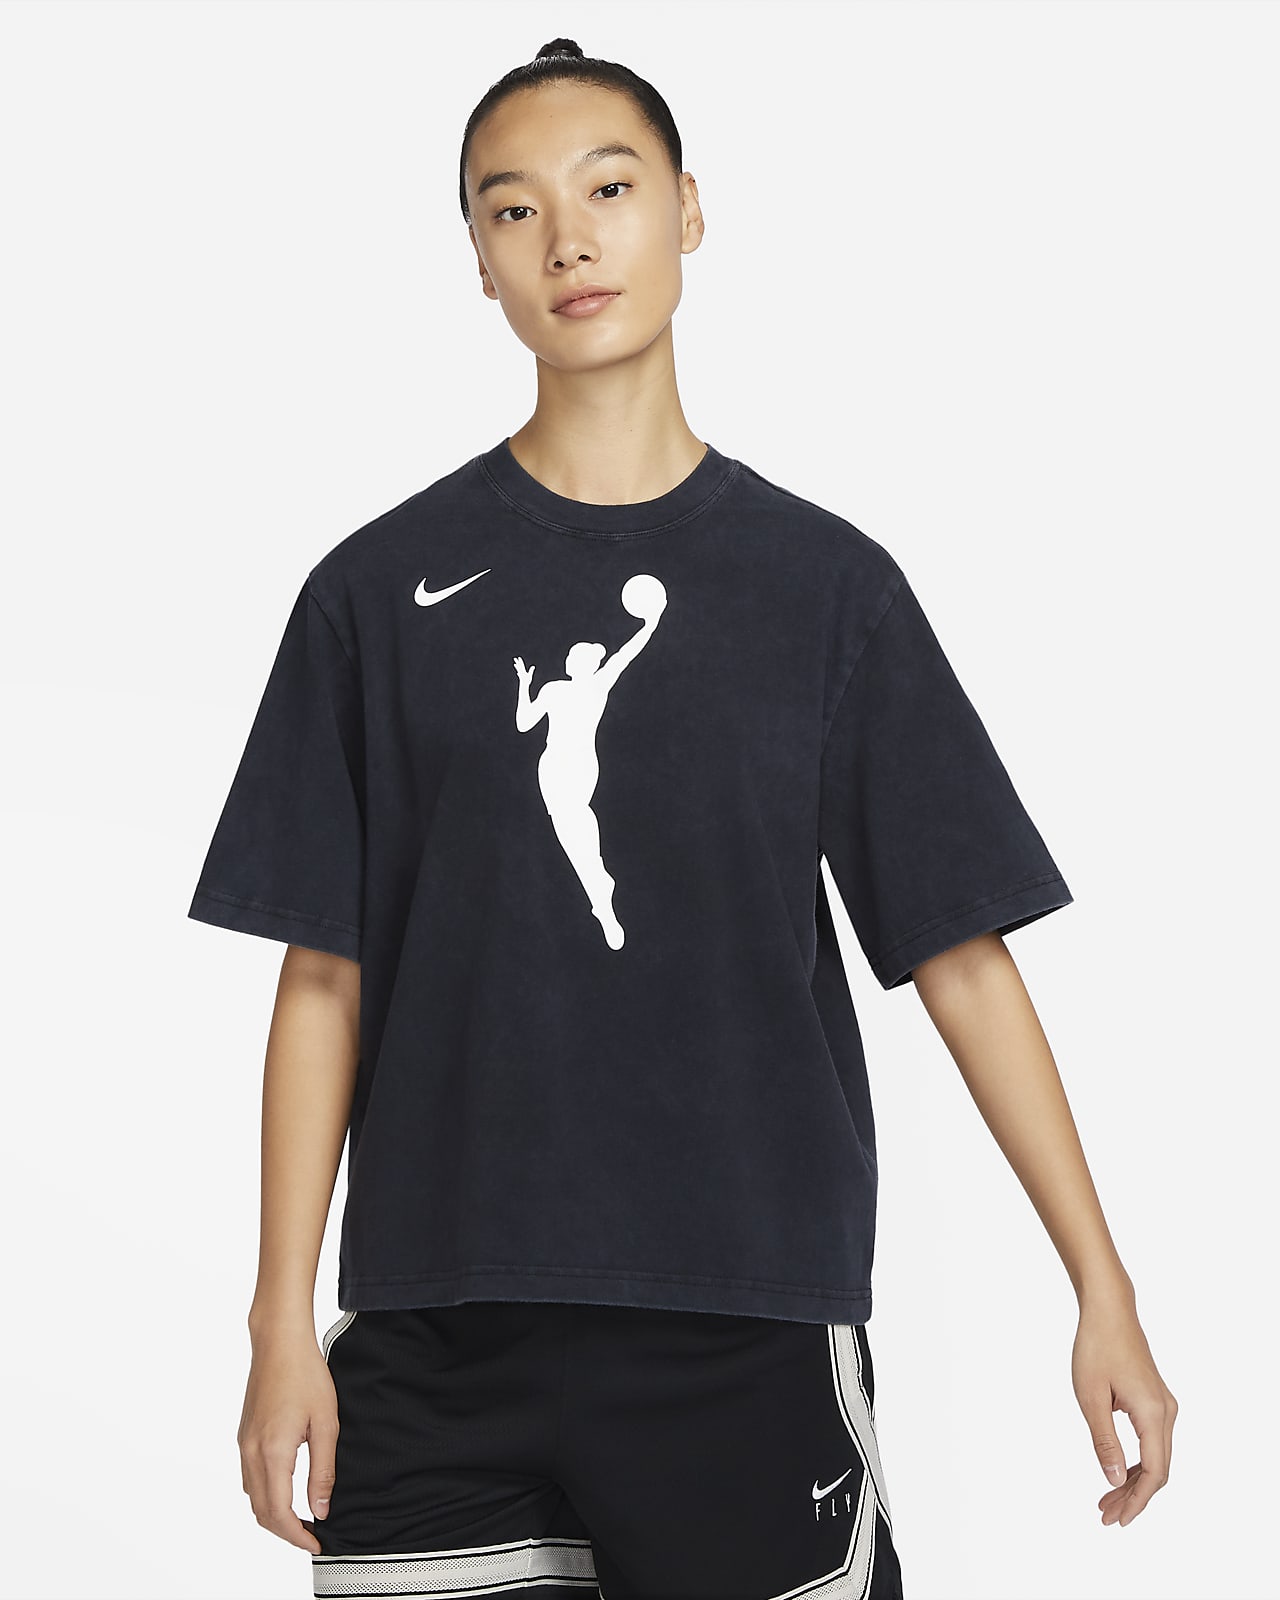 Playera cuadrada Nike WNBA para mujer Team 13